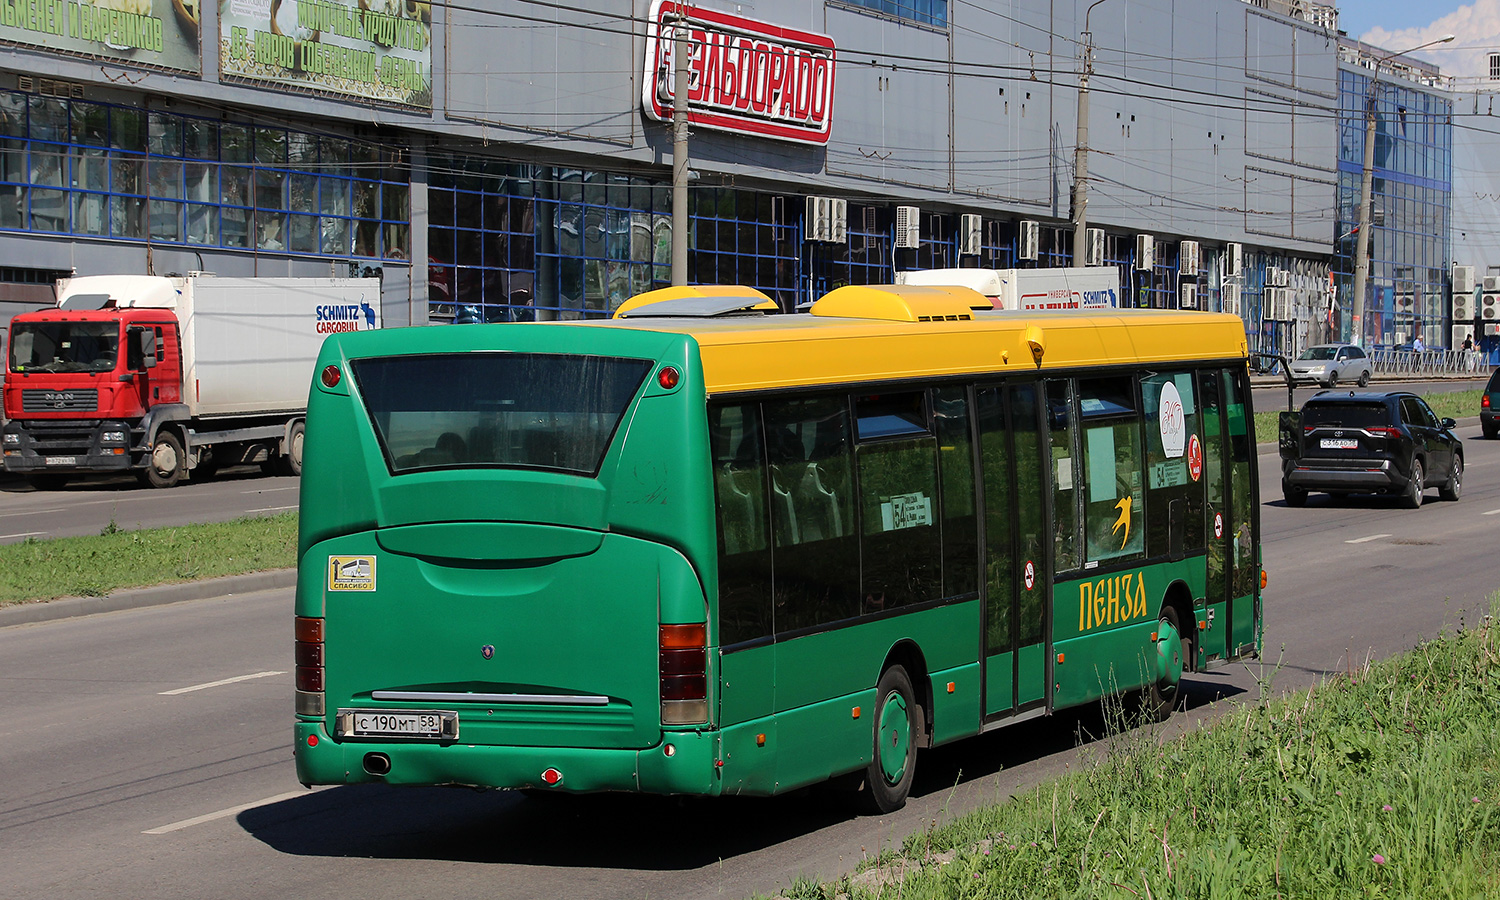 Obwód penzeński, Scania OmniLink I (Scania-St.Petersburg) Nr С 190 МТ 58